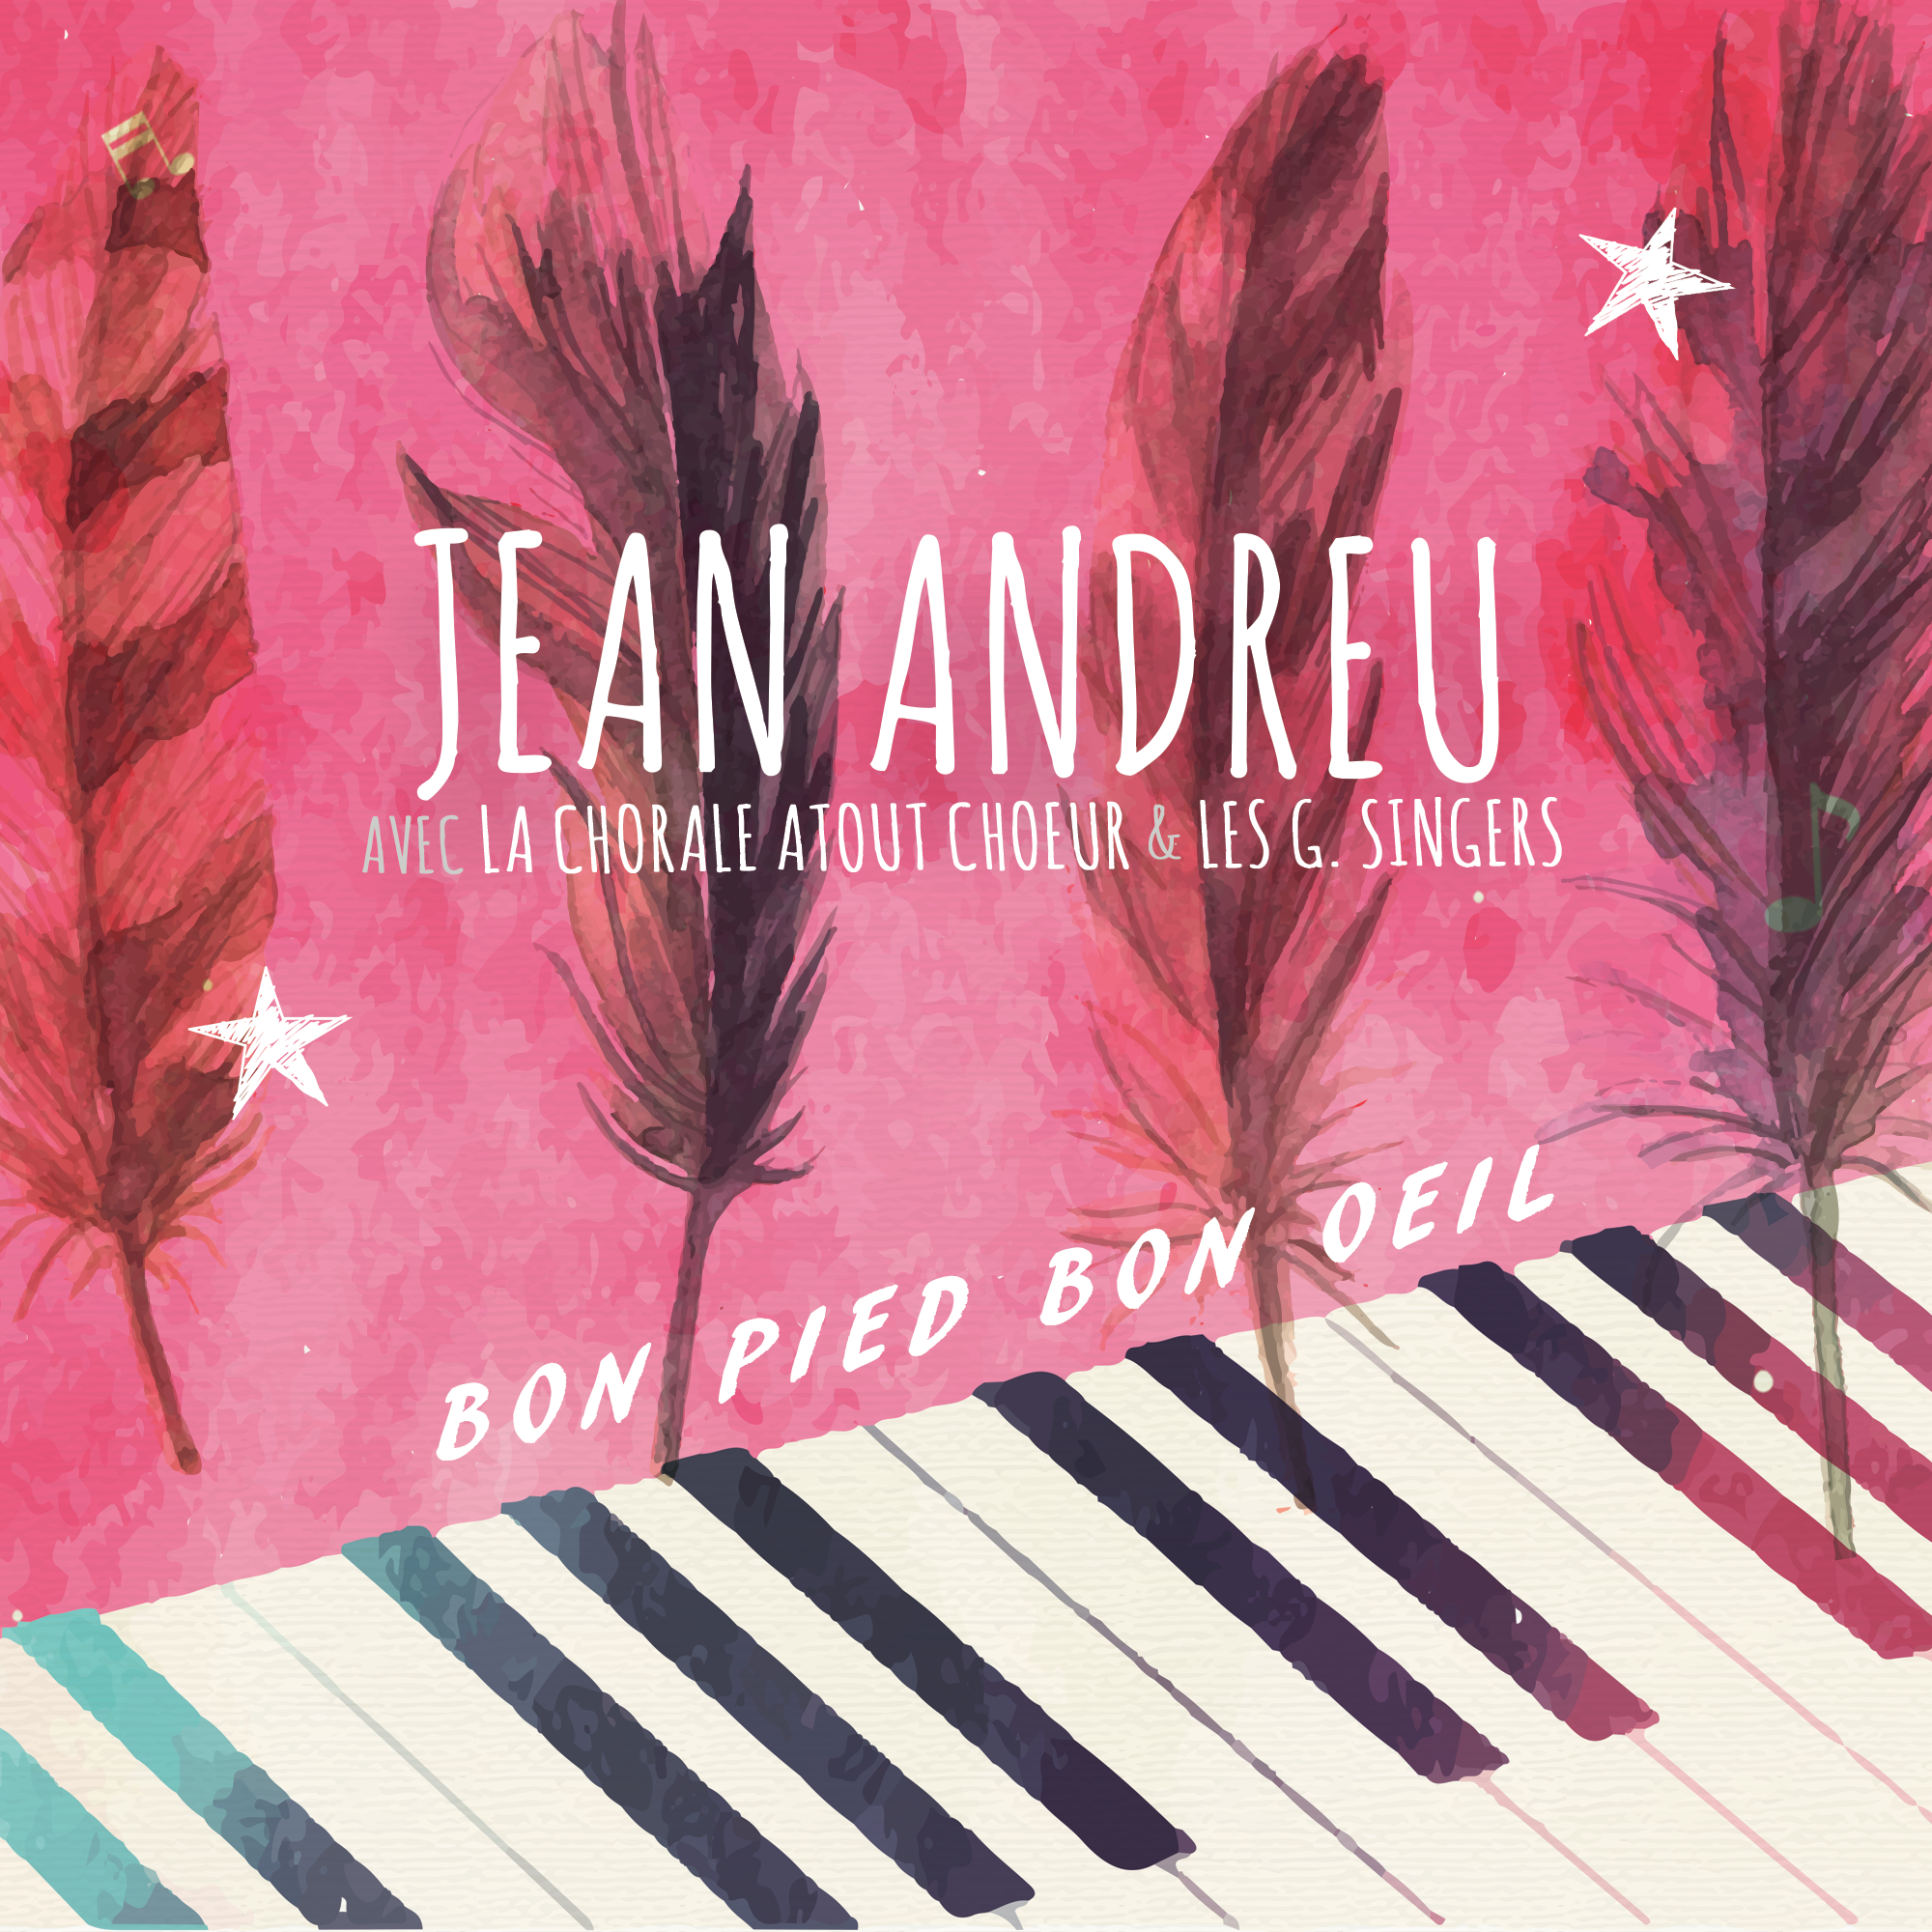 Pochette single Jean Andreu Bon Pied Bon Oeil avec Chorale Atout Choeur